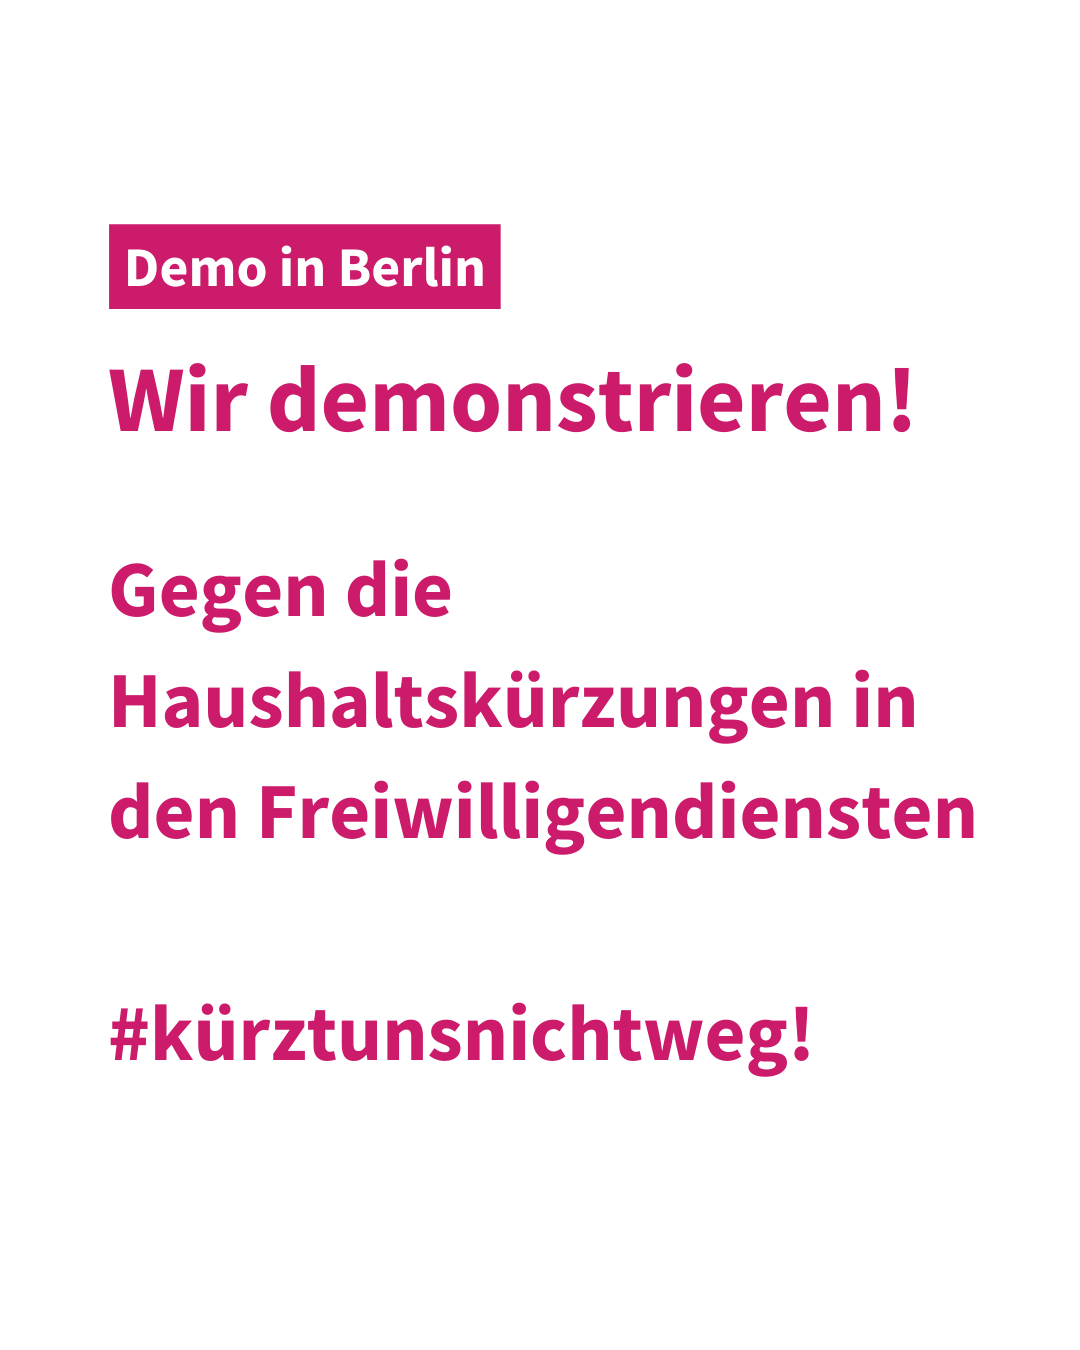 Gemeinsam stark für Freiwilligendienste: #Freiwilligendienstestärken Demo in Berlin